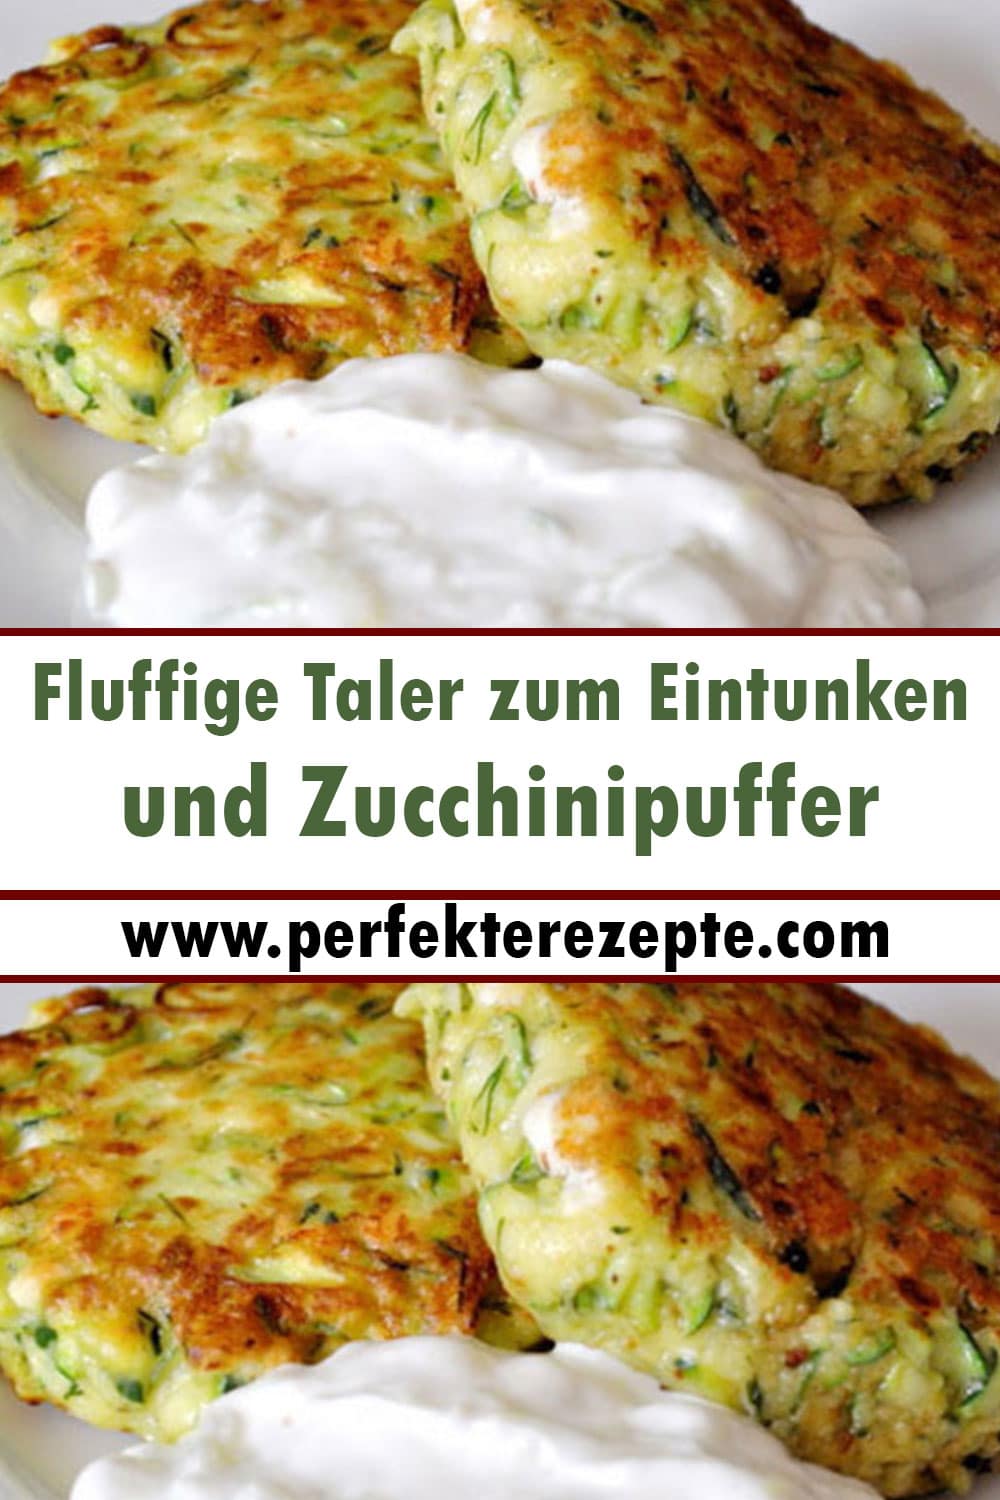 Fluffige Taler zum Eintunken: Zucchinipuffer mit Feta und Tzatziki